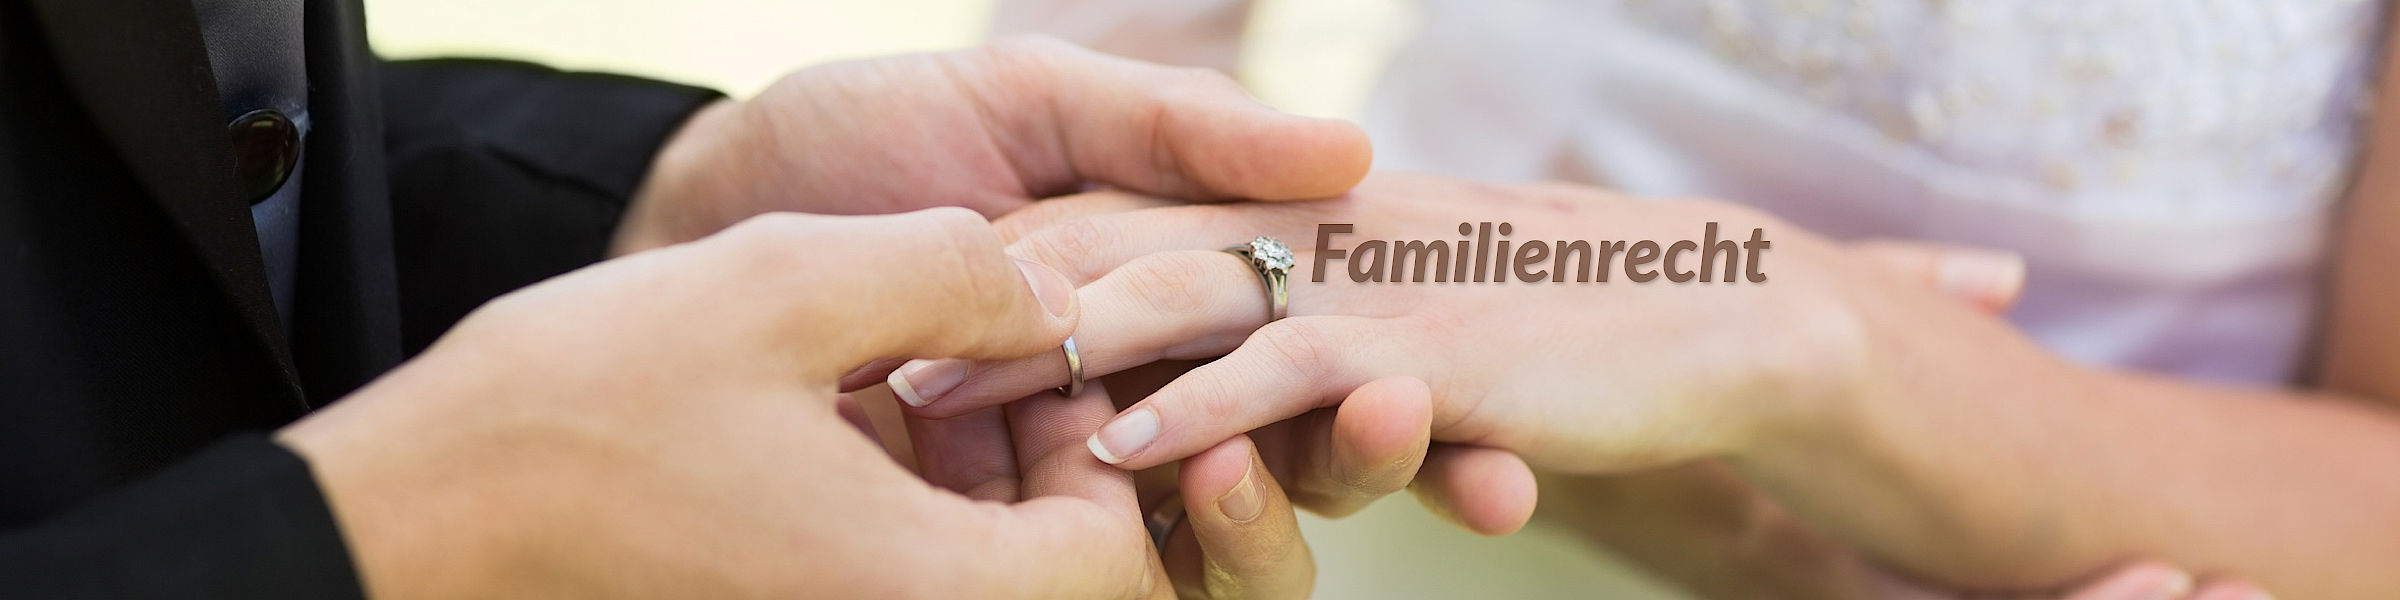 Familienrecht (Bild: Bräutigam steckt Trauring an Finger der Braut)